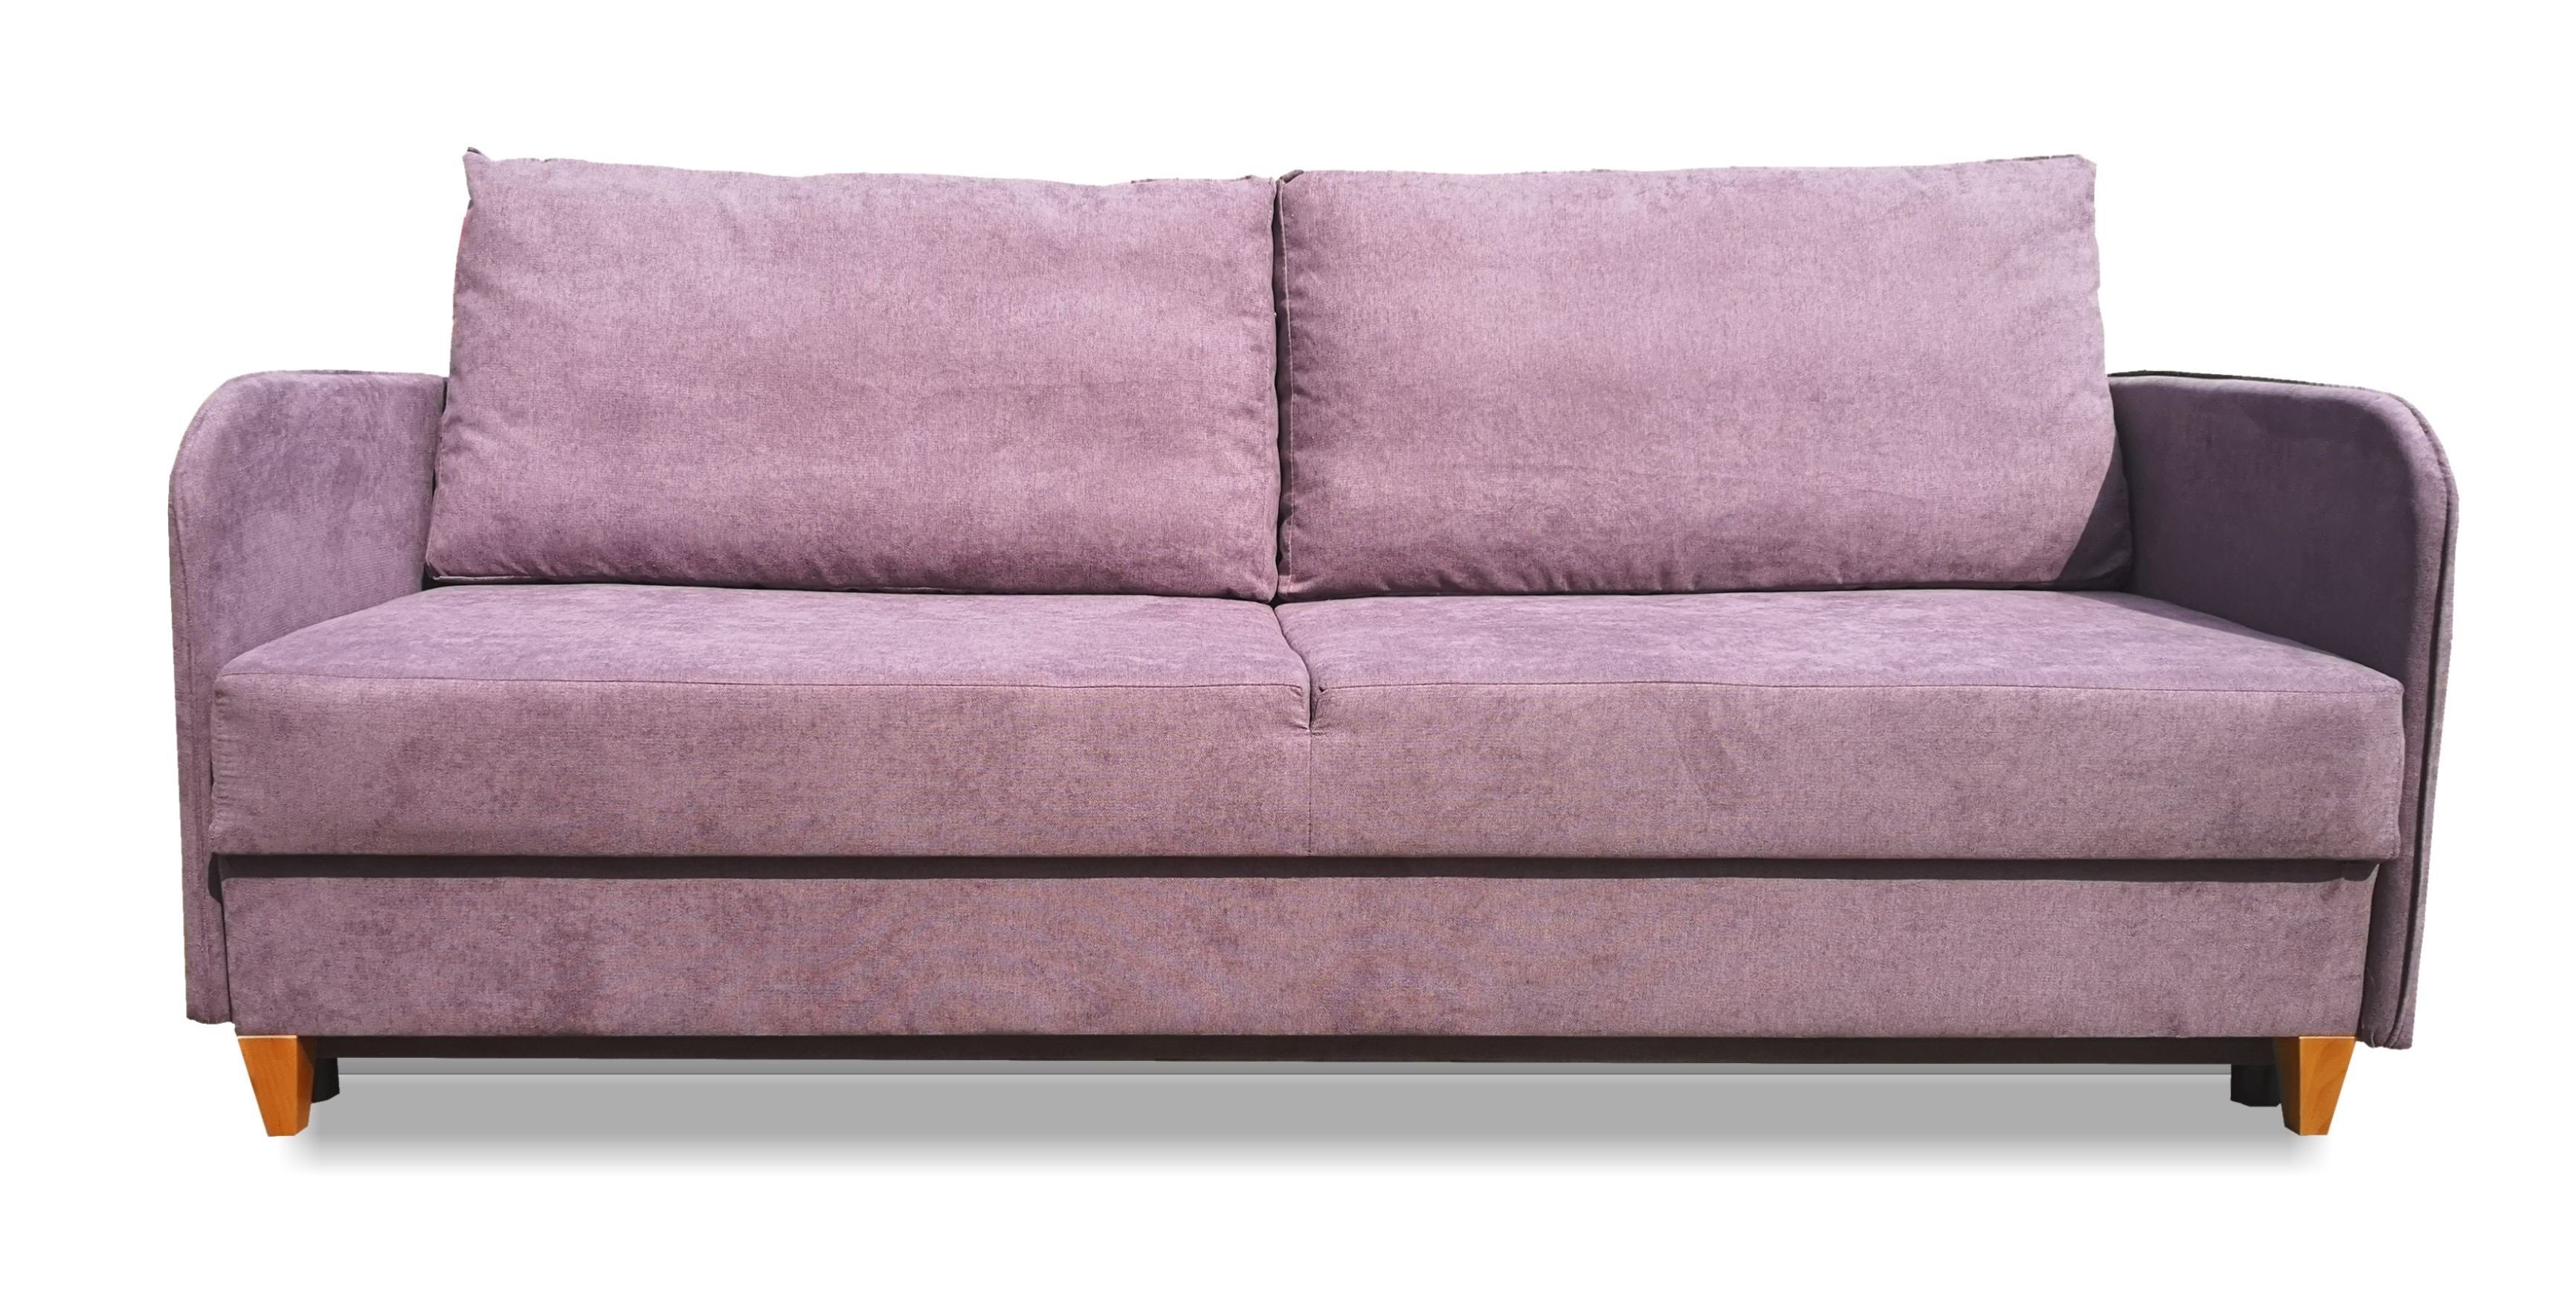 Siblo 3-Sitzer Ausziehbares Dreisitziges Sofa - Lila Schlaffunktion Pablo Dreisitzer-Sofa mit - Bettzeugbehälter